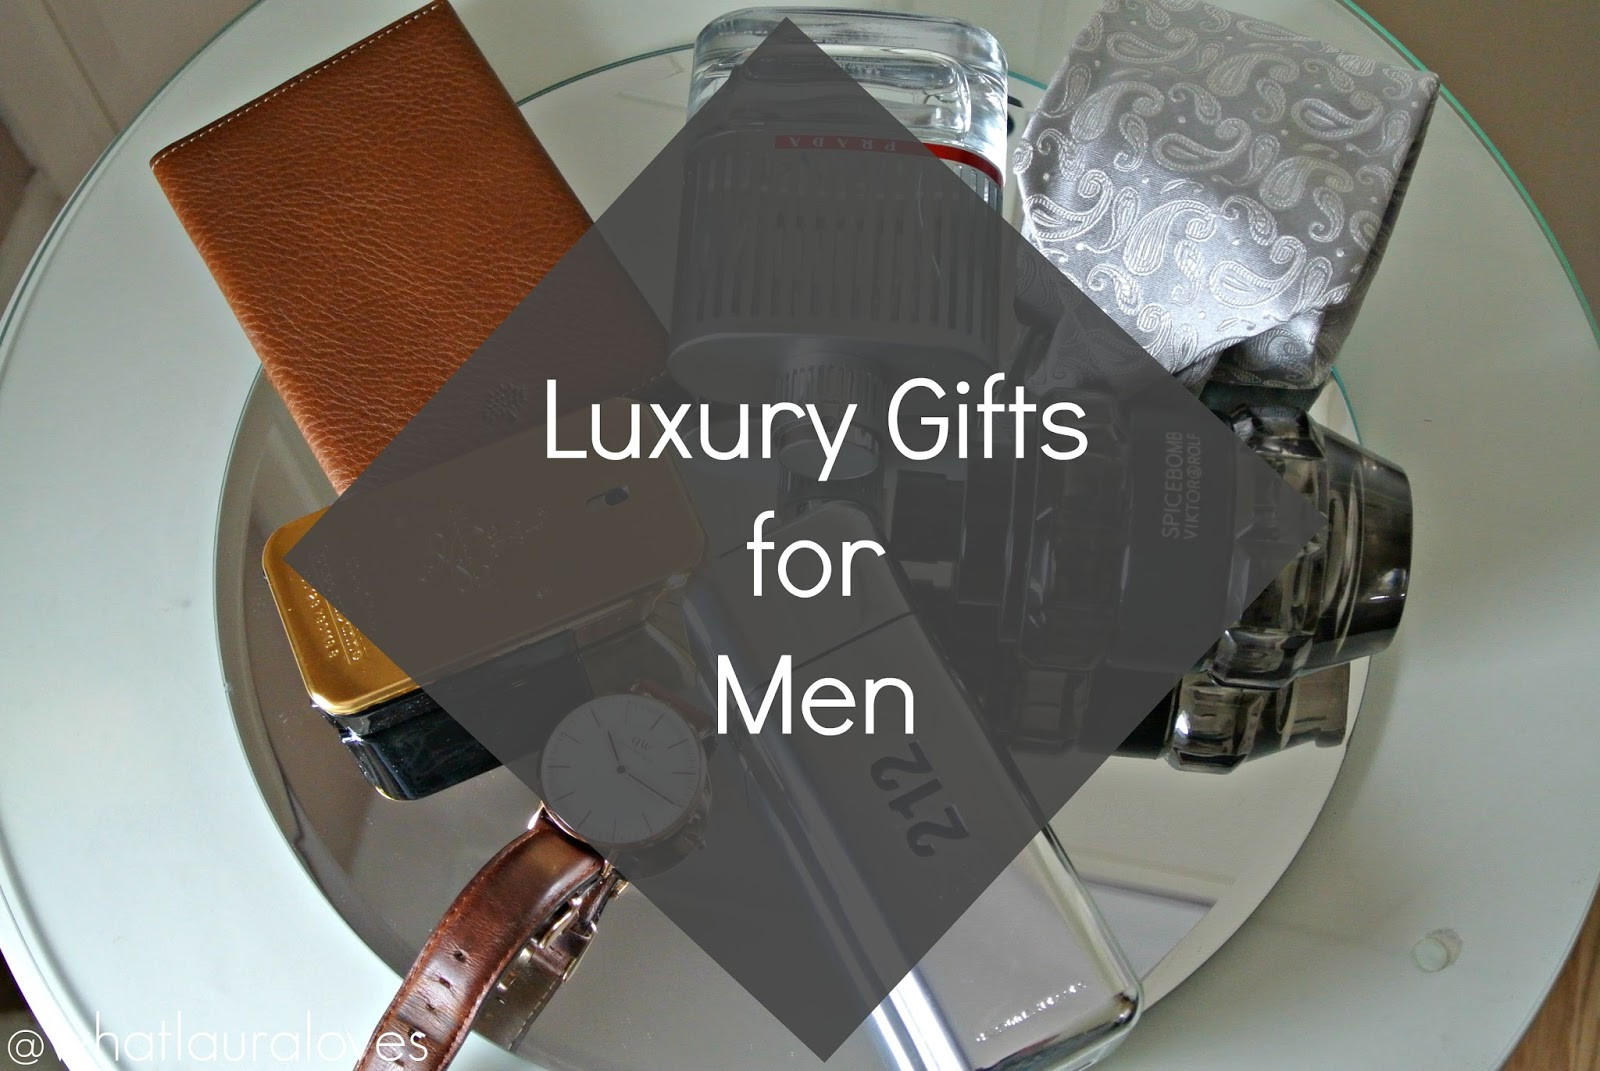 Birthday Gift Ideas For Men
 Top 5 Luxury Gift Ideas for Men